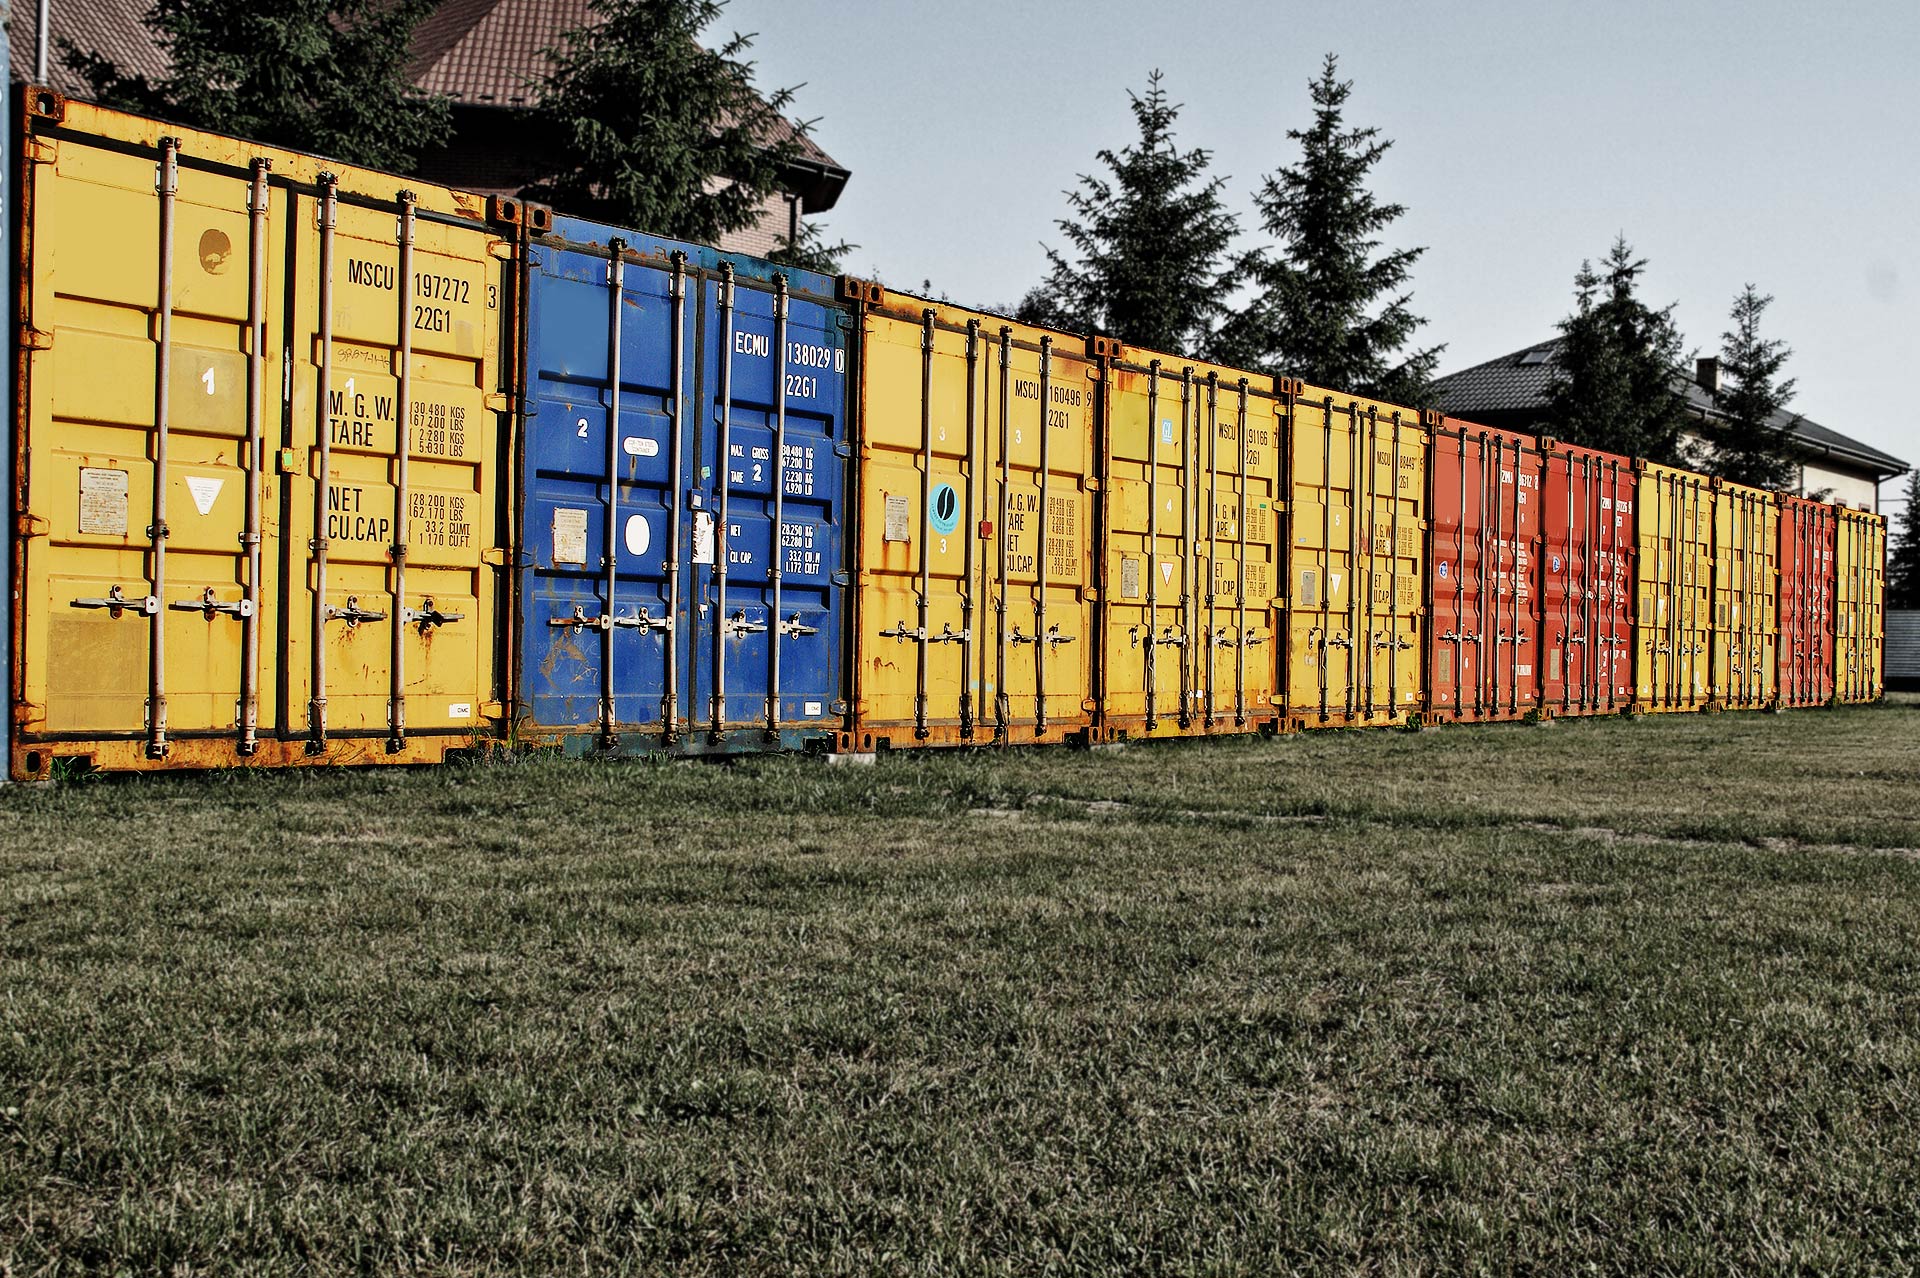 PRO-STORAGE - Wynajem kontenerów typu Self-Storage w powiecie wołomińskim